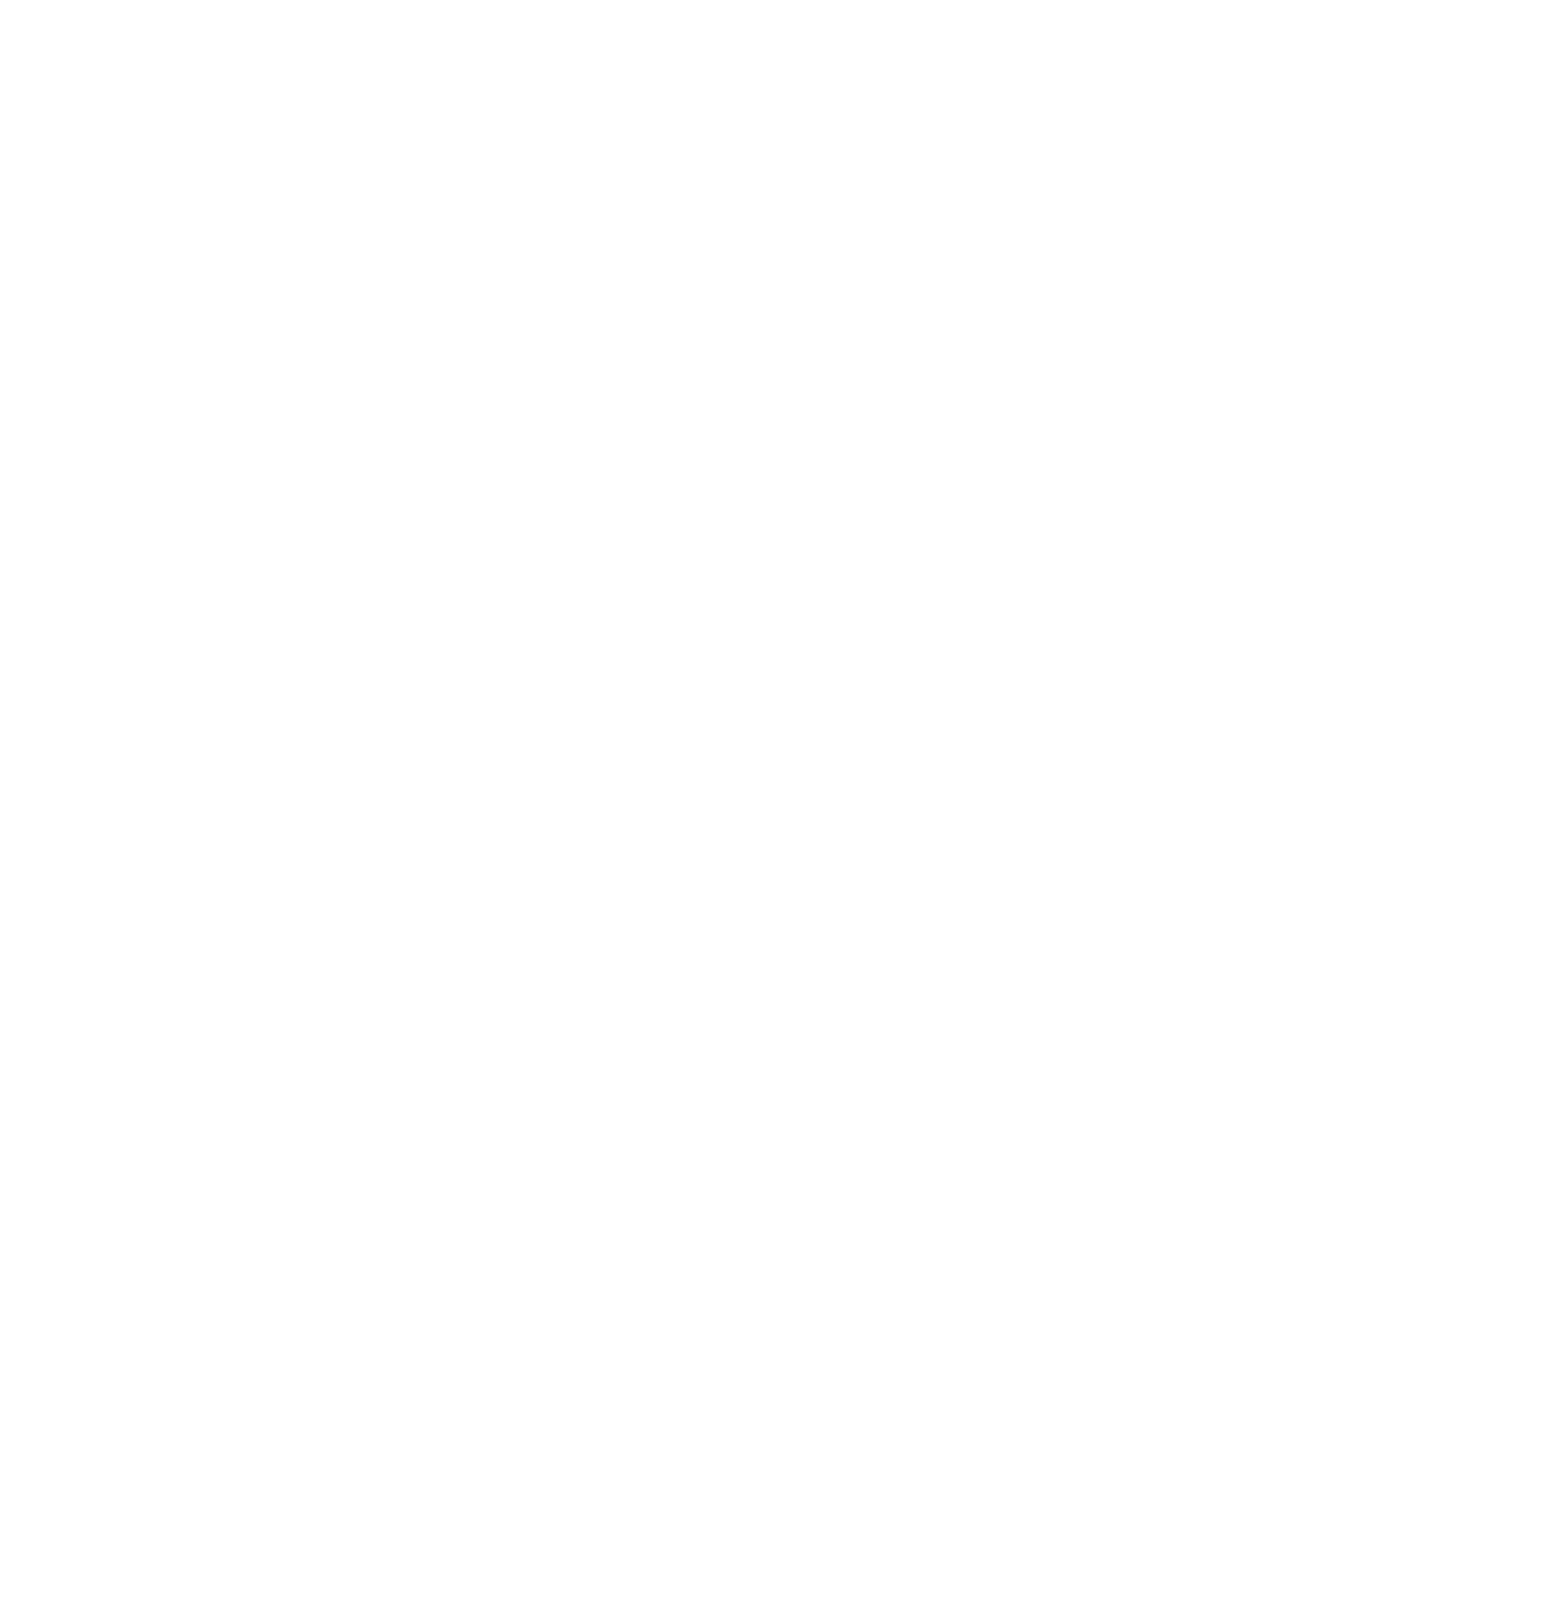 Nestlé logo large for dark backgrounds (transparent PNG)